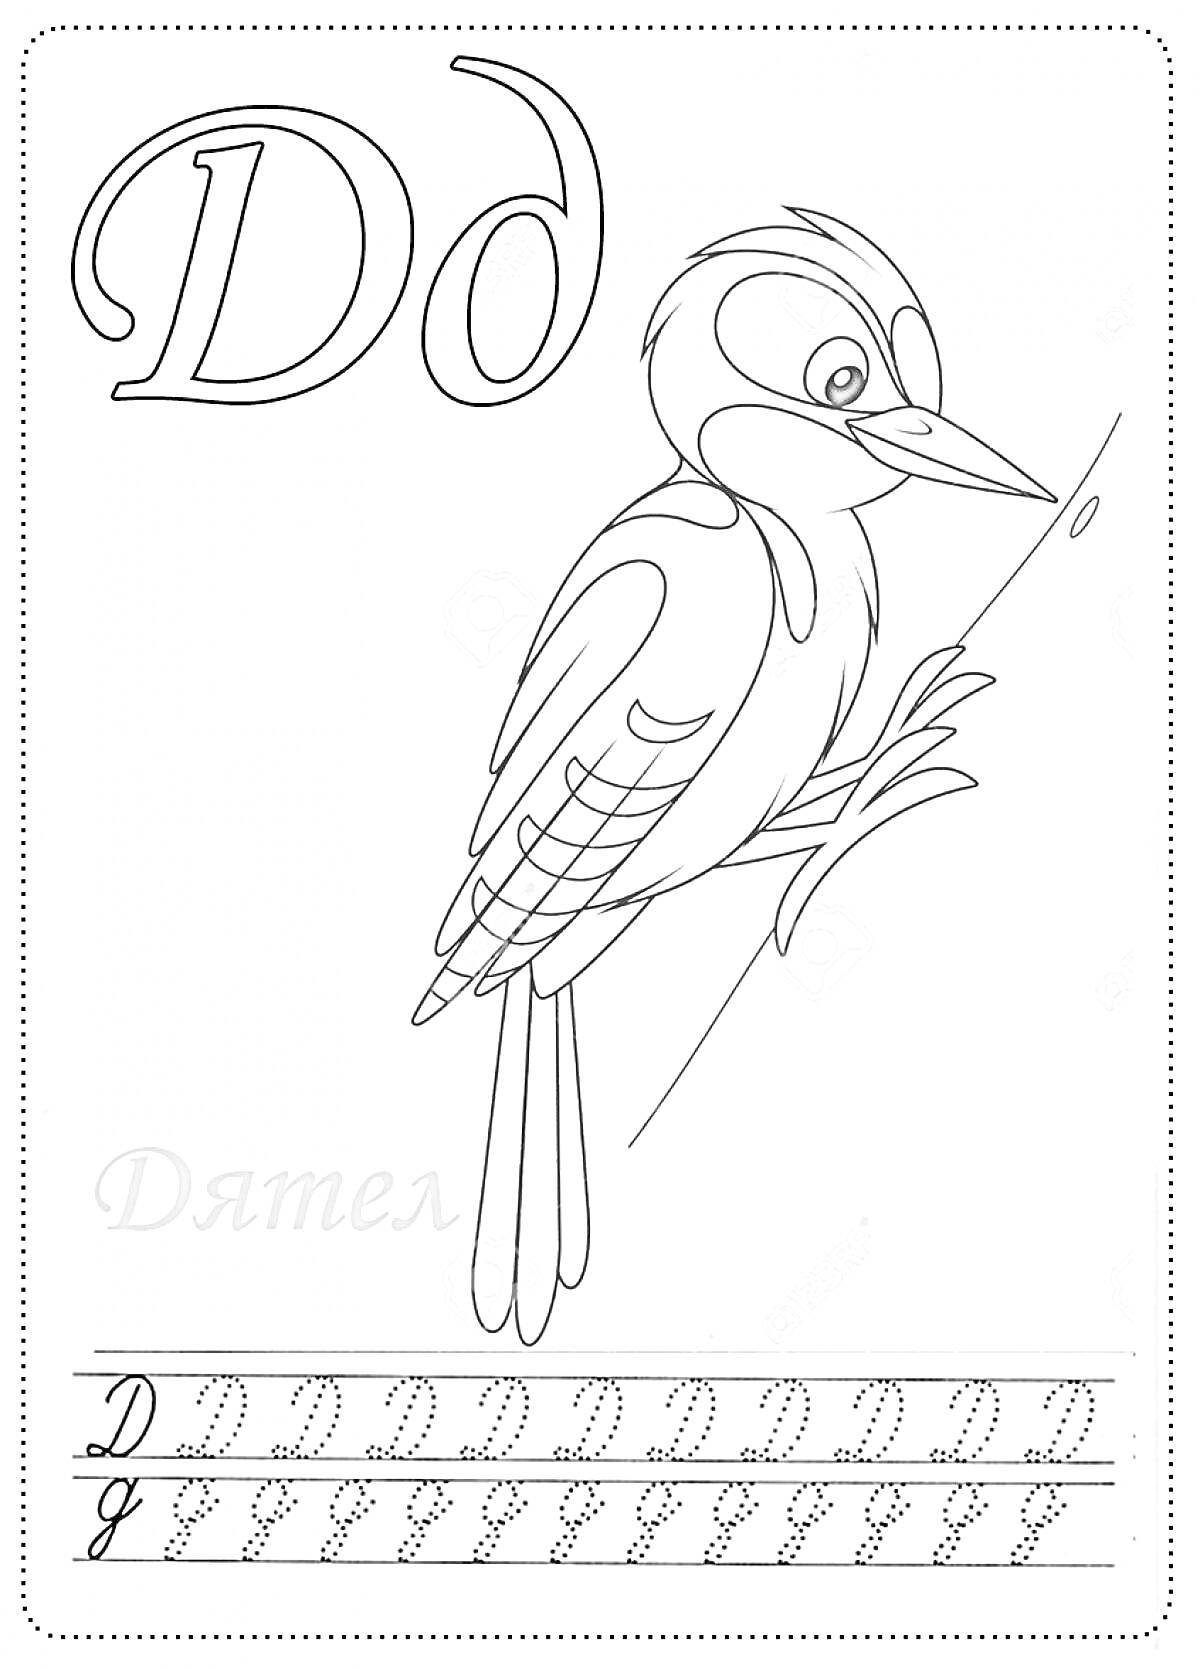 Буква Д - Дятел, прописная и строчная форма буквы Д, изображение дятла, упражнение по написанию буквы